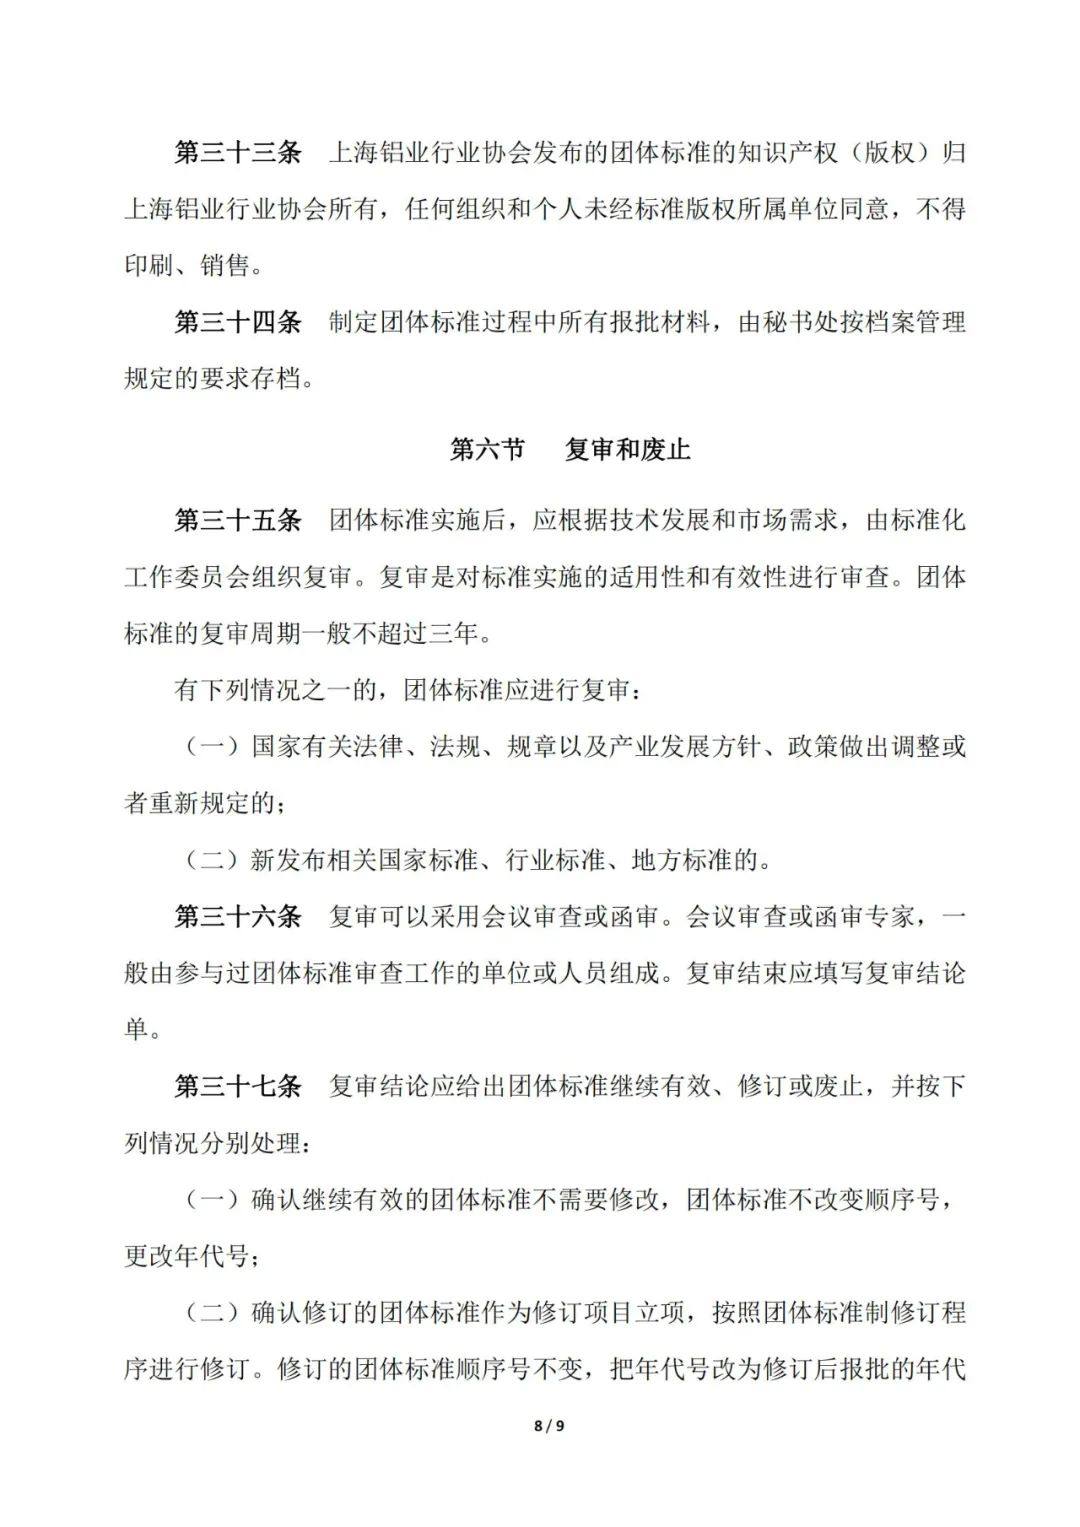 关于发布《上海铝业行业协会团体标准管理办法》的通知